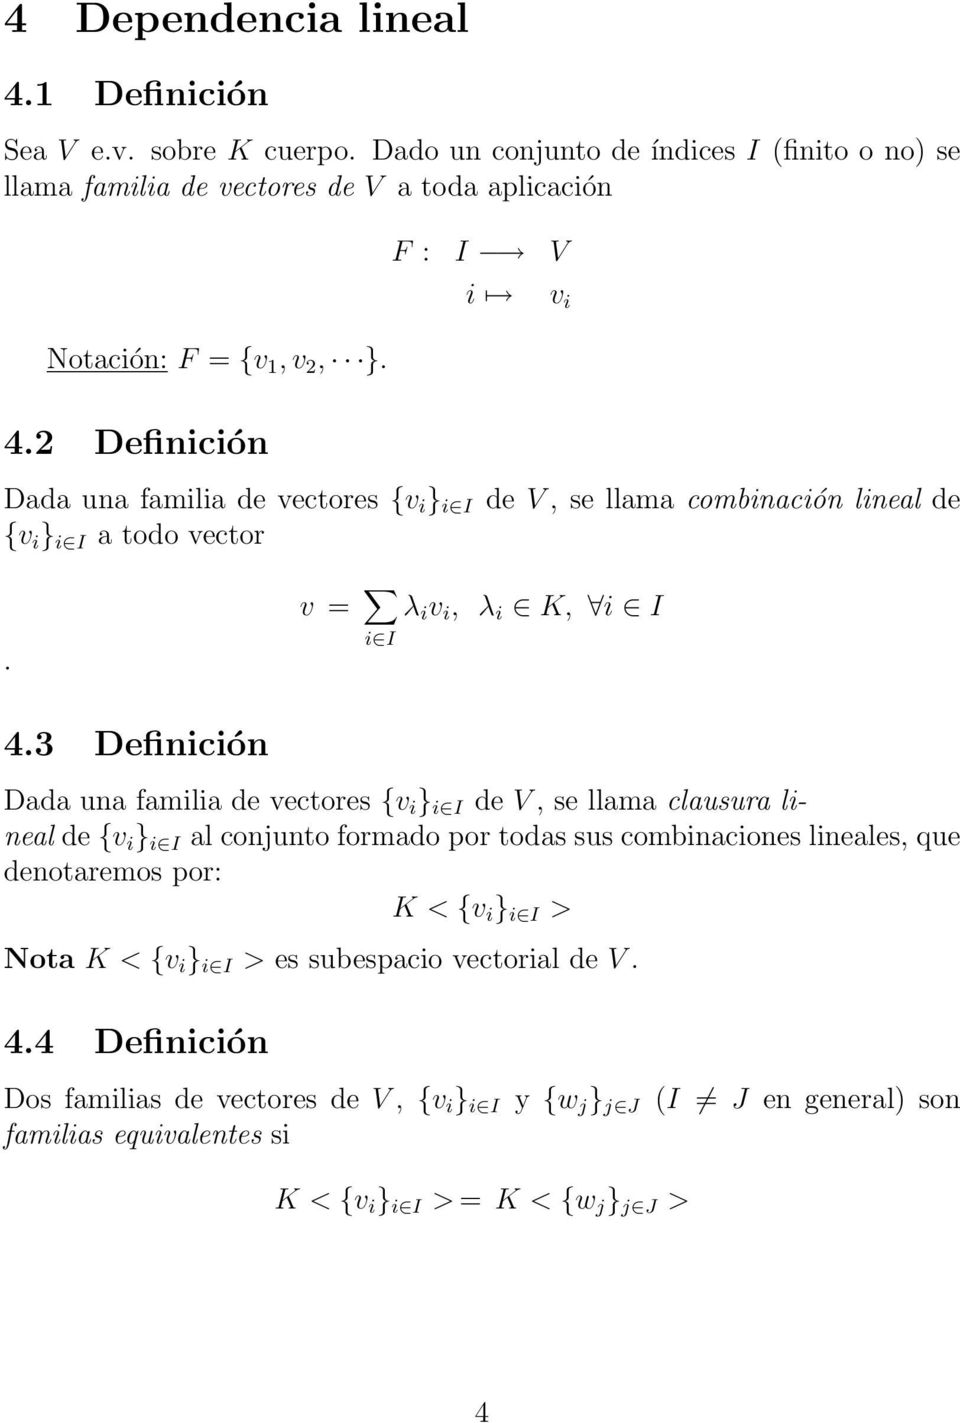 3 Definición Dada una familia de vectores {v i } i I de V, se llama clausura lineal de {v i } i I al conjunto formado por todas sus combinaciones lineales, que denotaremos por: K < {v i